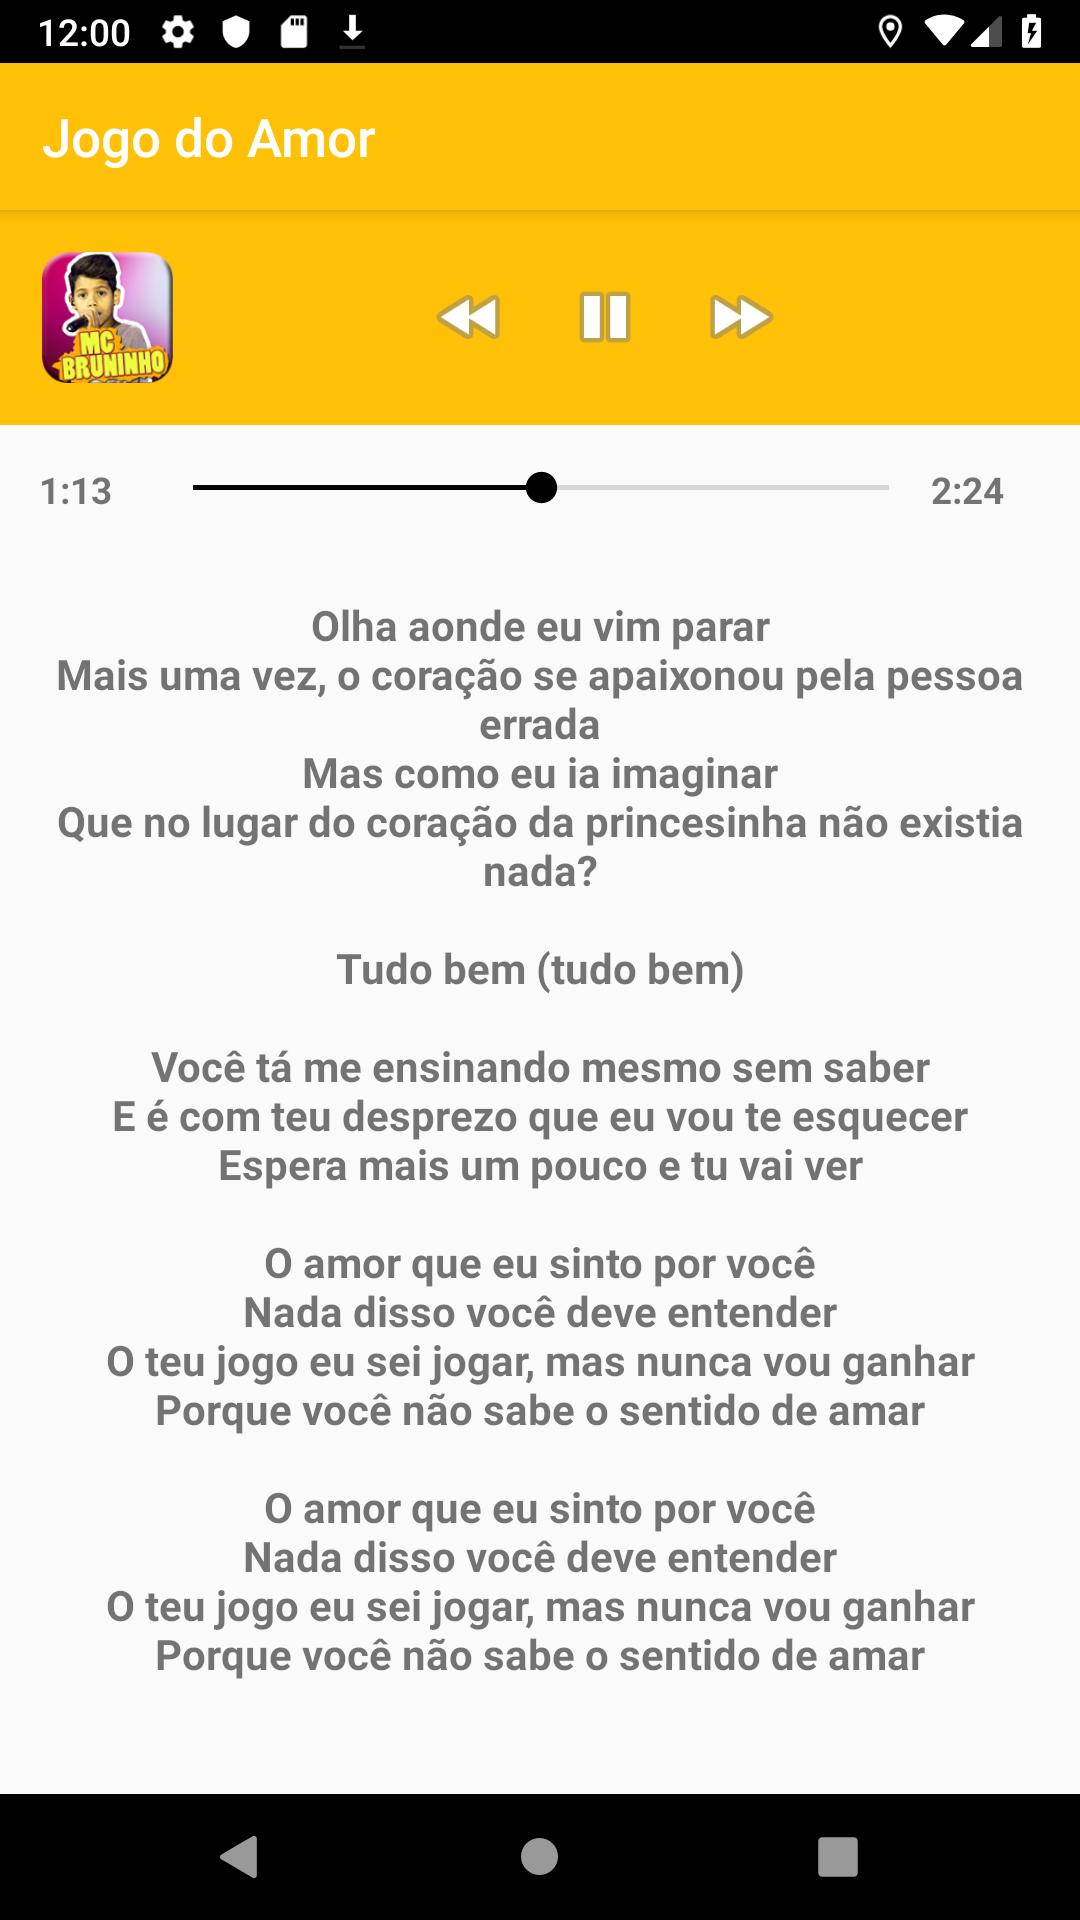 Mc Bruninho - Jogo Do Amor (Letra) 